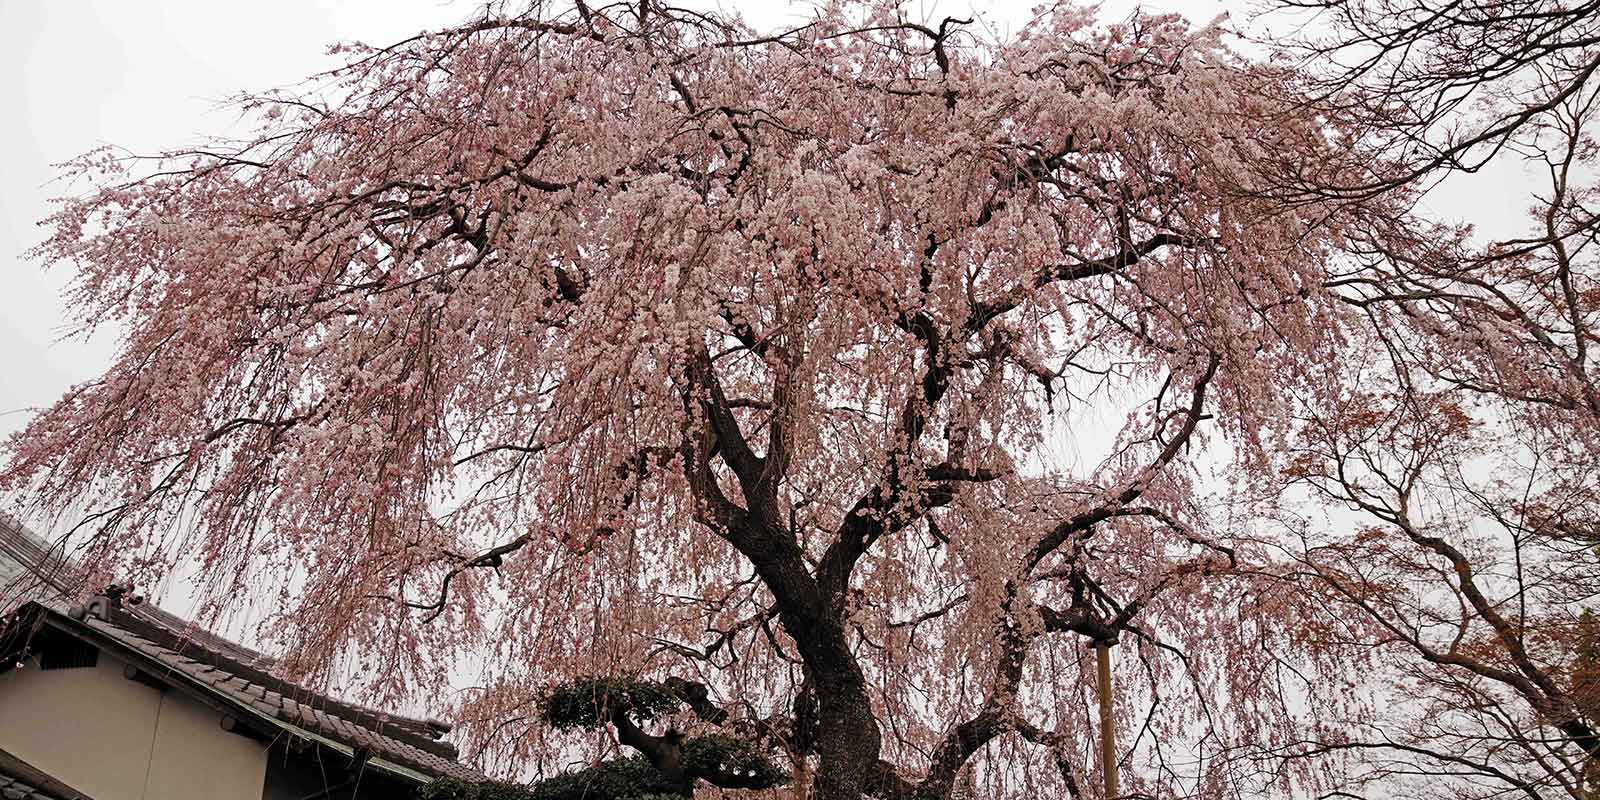 念仏寺のしだれ桜